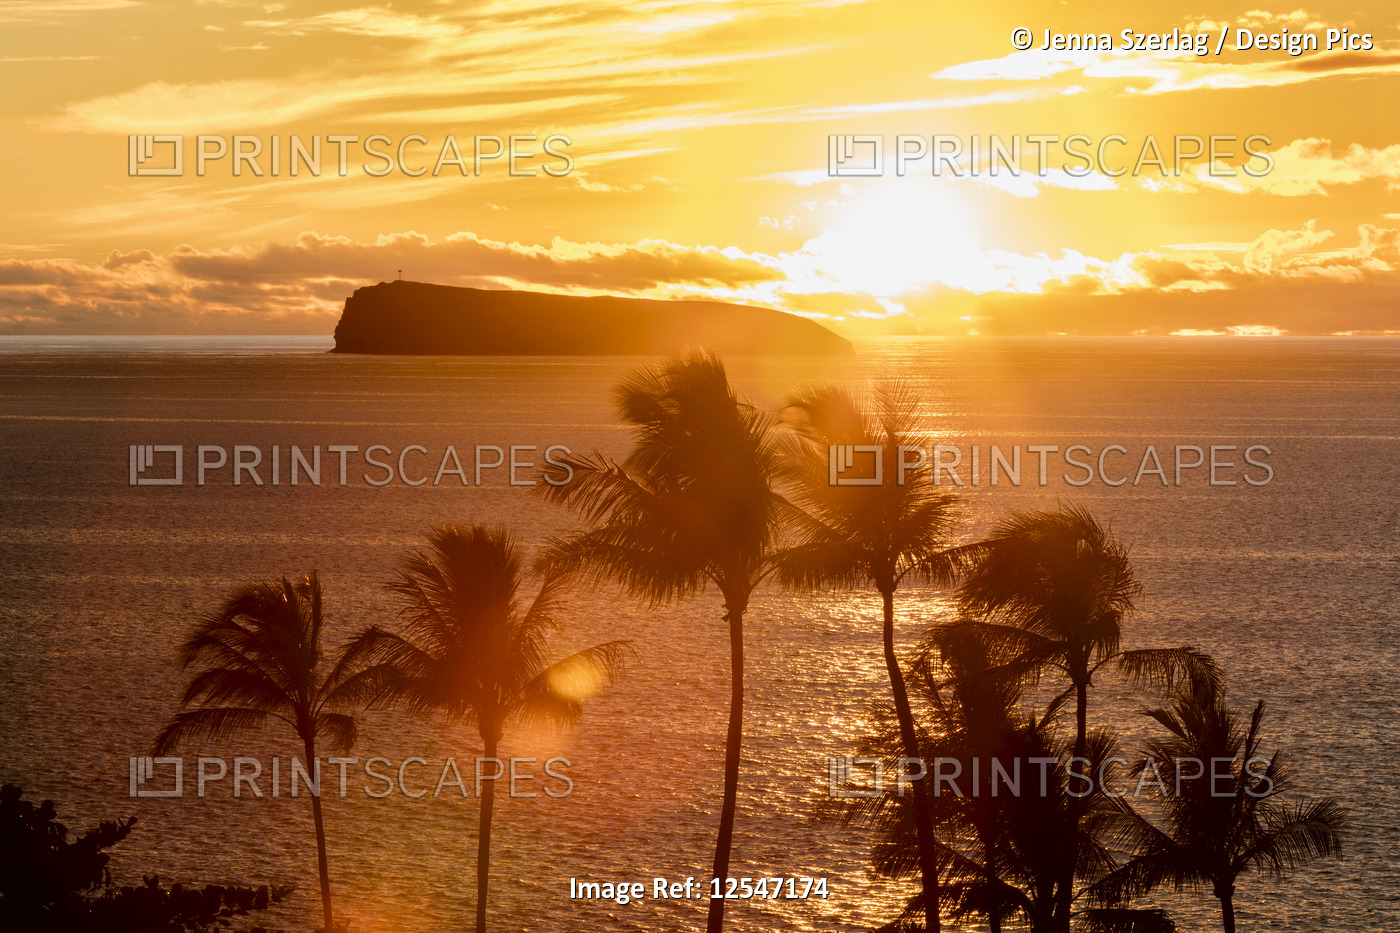 The Sunsets Behind Molokini Island With Palm Trees, Makena, Maui, Hawaii USA